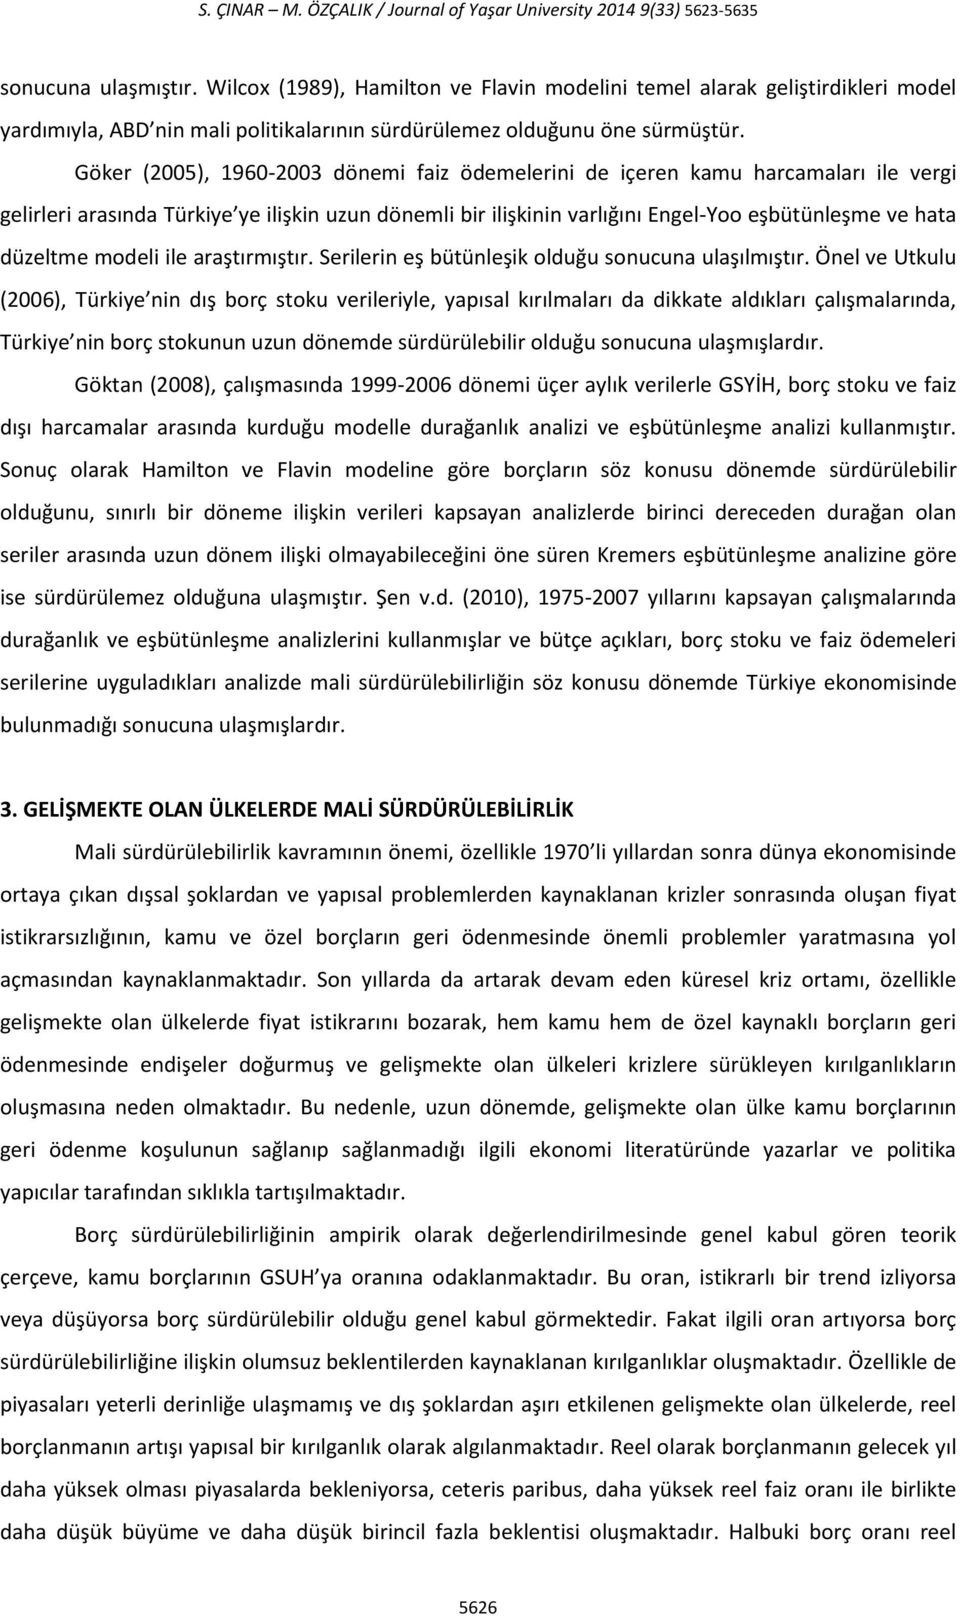 Göker (2005), 1960-2003 dönemi faiz ödemelerini de içeren kamu harcamaları ile vergi gelirleri arasında Türkiye ye ilişkin uzun dönemli bir ilişkinin varlığını Engel-Yoo eşbütünleşme ve hata düzeltme